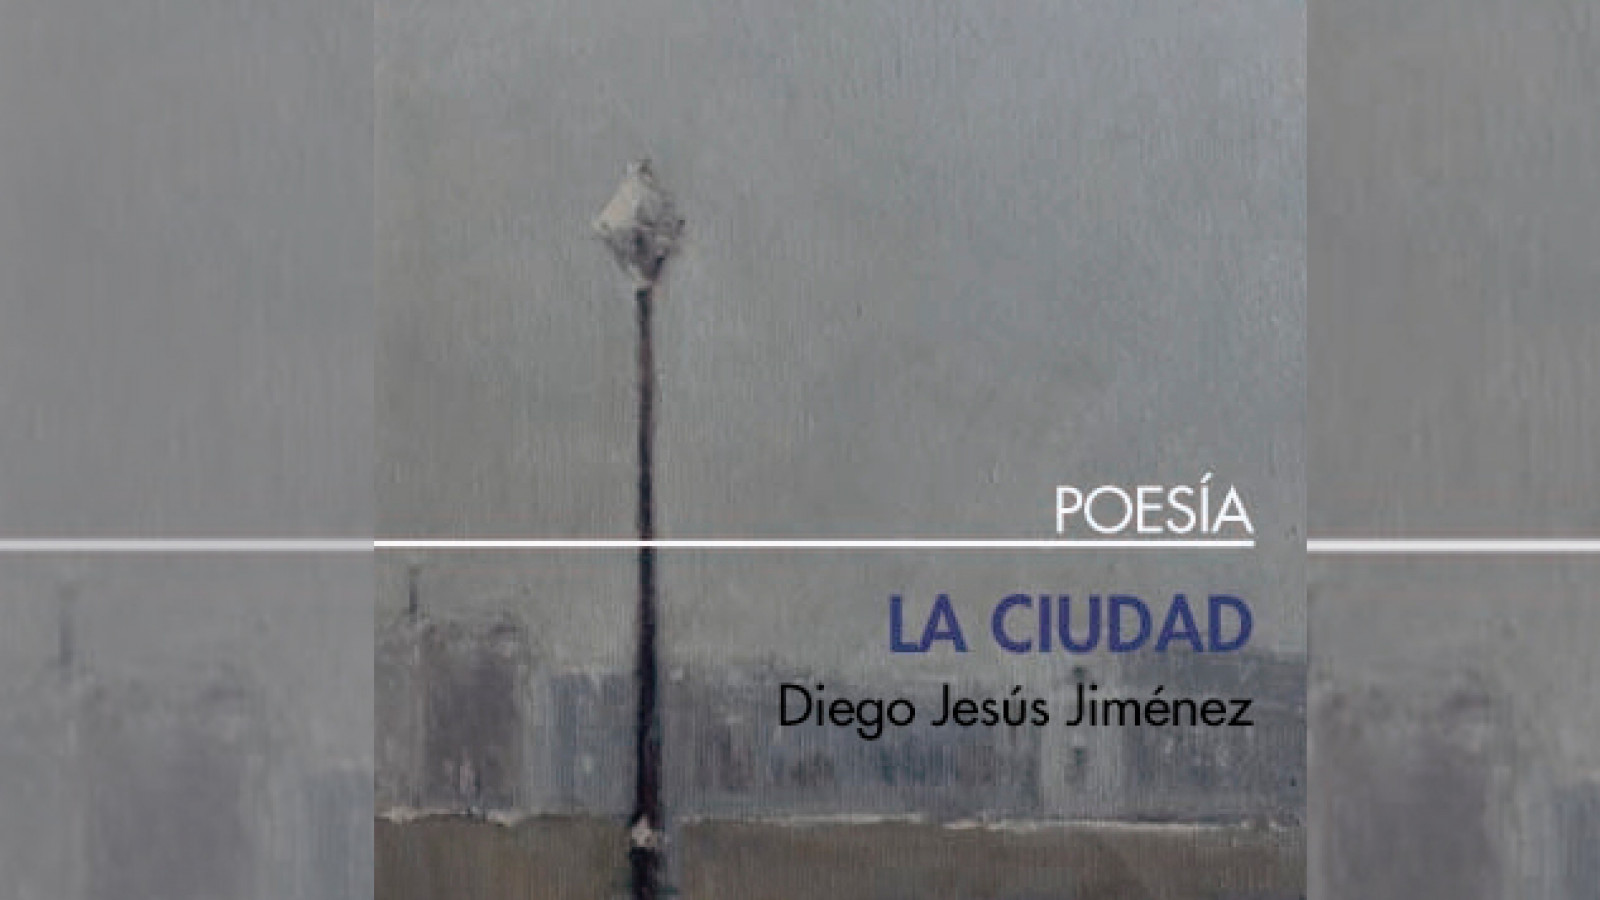 Homenaje al poeta Diego Jesús Jiménez en el 50 aniversario de la publicación “La ciudad”